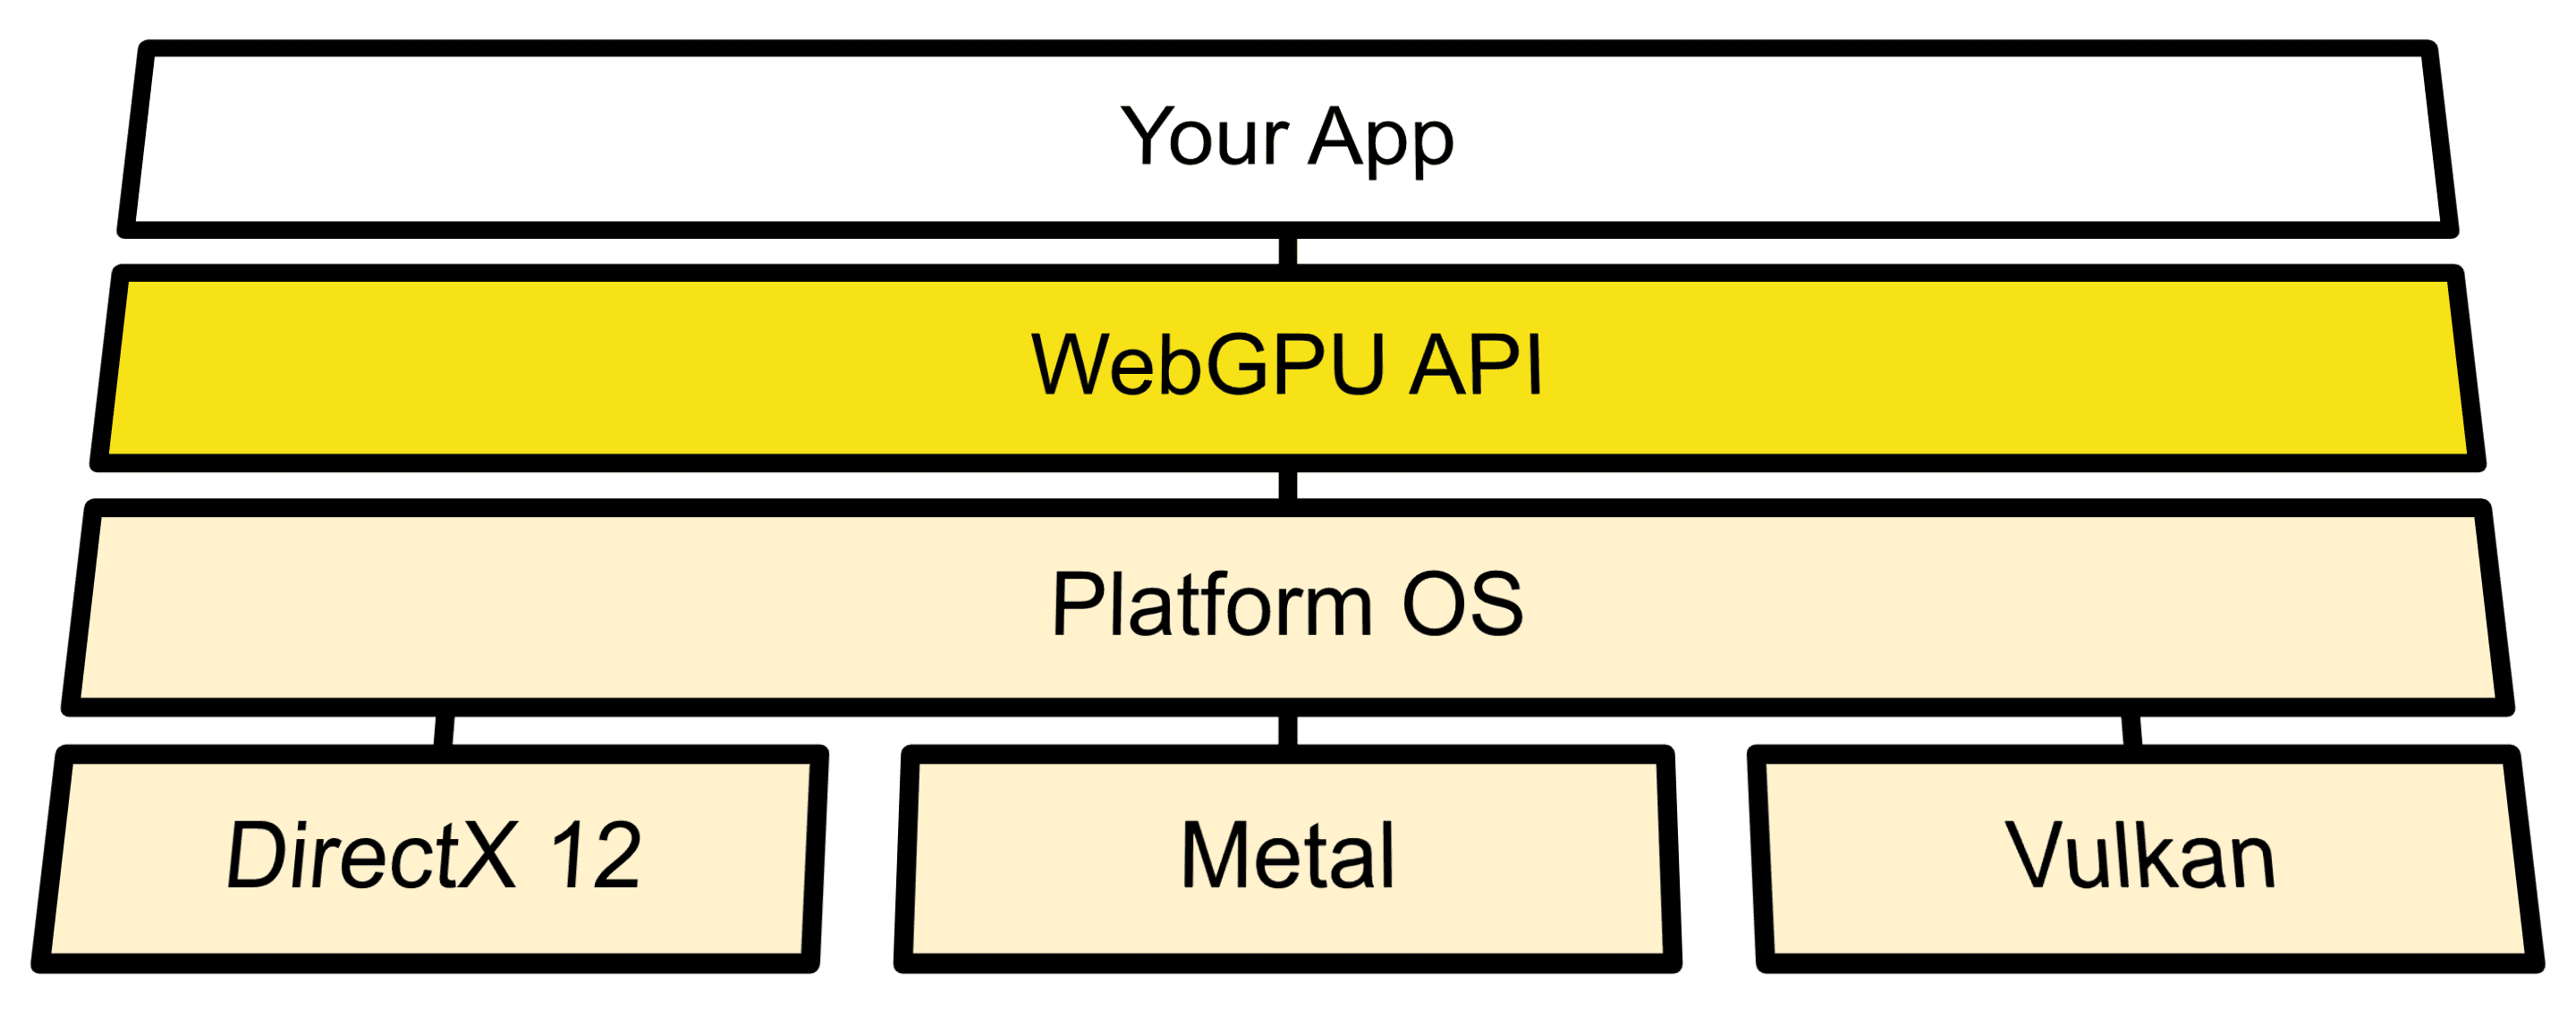 תרשים ארכיטקטורה שמציג חיבור של WebGPUs בין ממשקי OS API לבין Direct3D 12 , Metal ו-Vulkan.